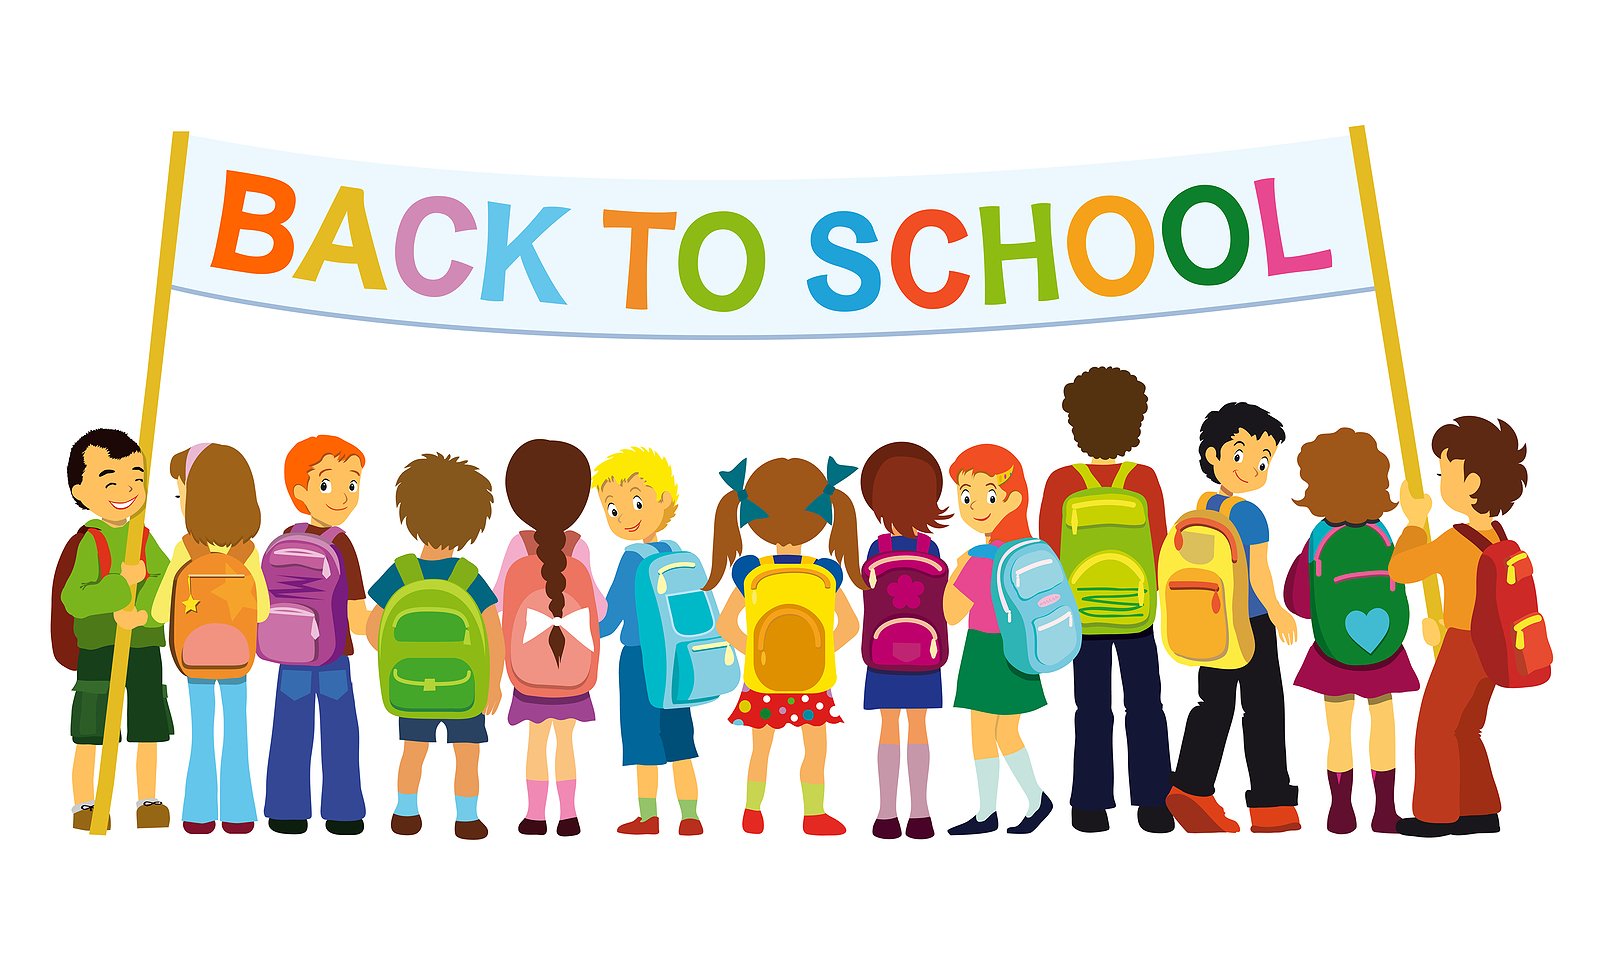 Back to school clipart 2 - Back To School Clipart Free